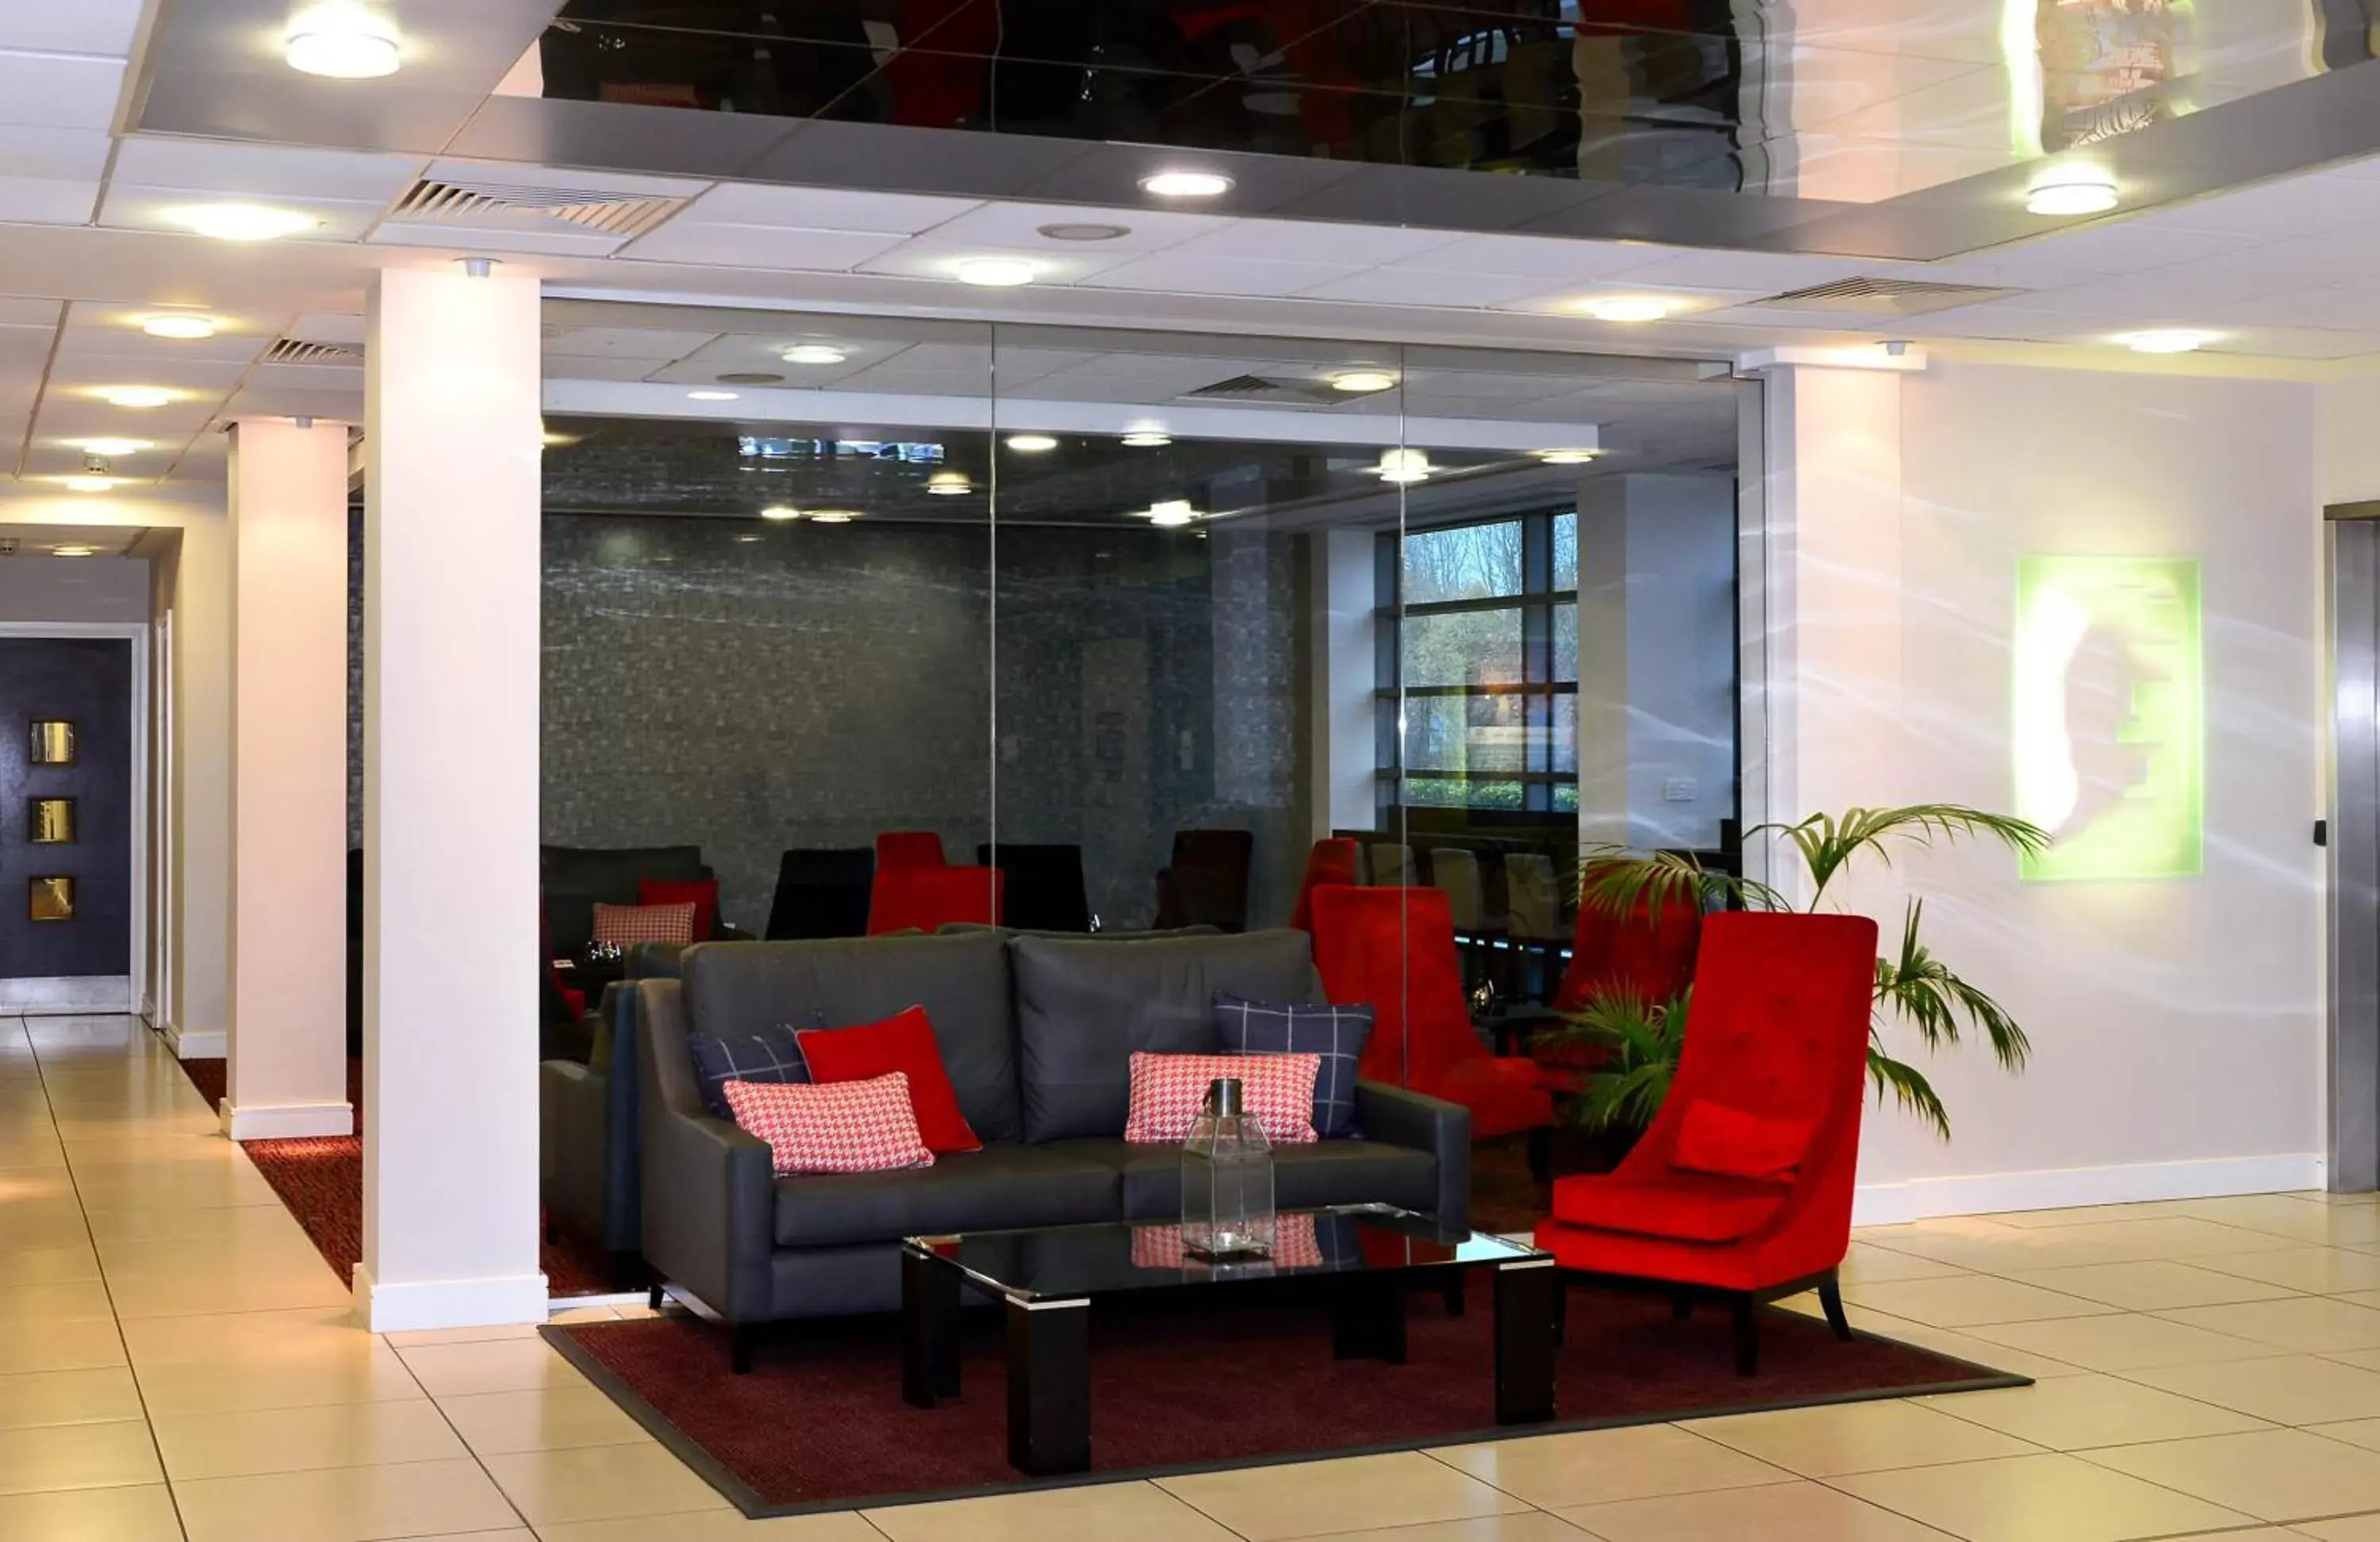 Lobby or reception, Lobby/Reception in International Hotel Telford